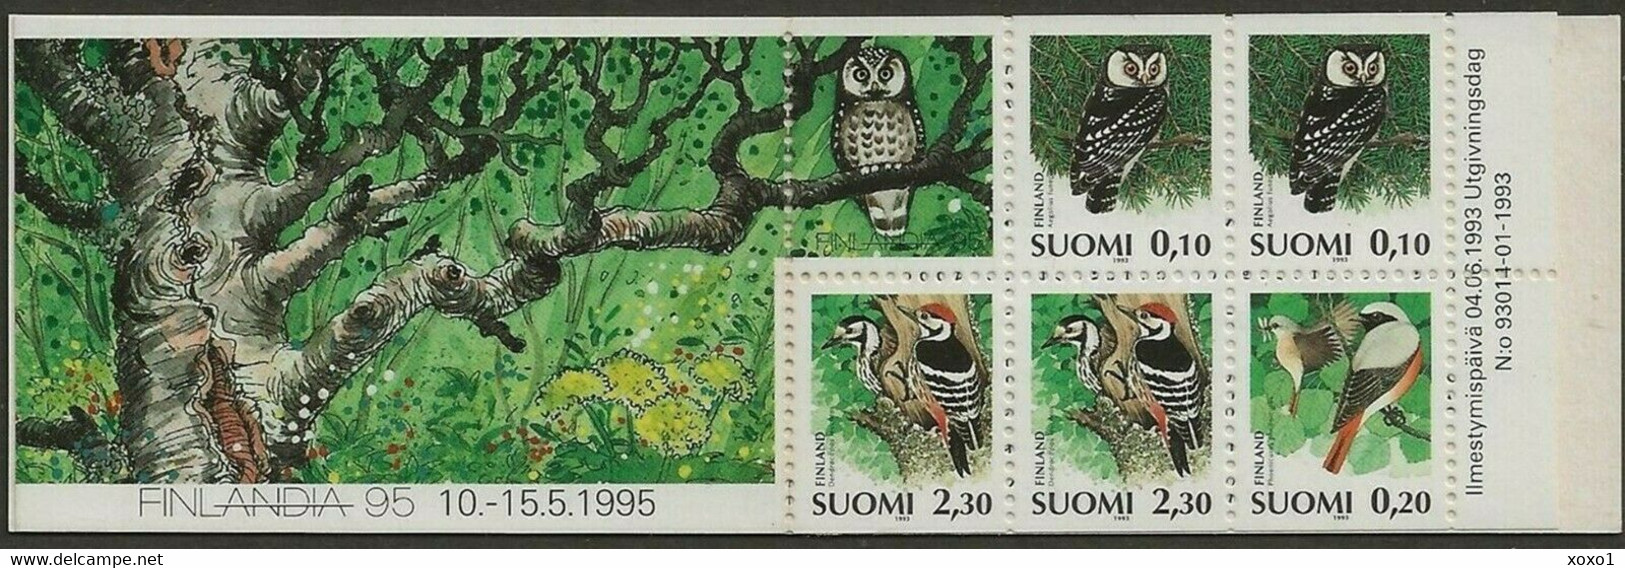 Finland 1993 MiNr. 1212 - 1214  Finnland Birds Boreal Owl, Common Redstart, White-backed Woodpecker  5v MNH** 2.70 € - Gufi E Civette